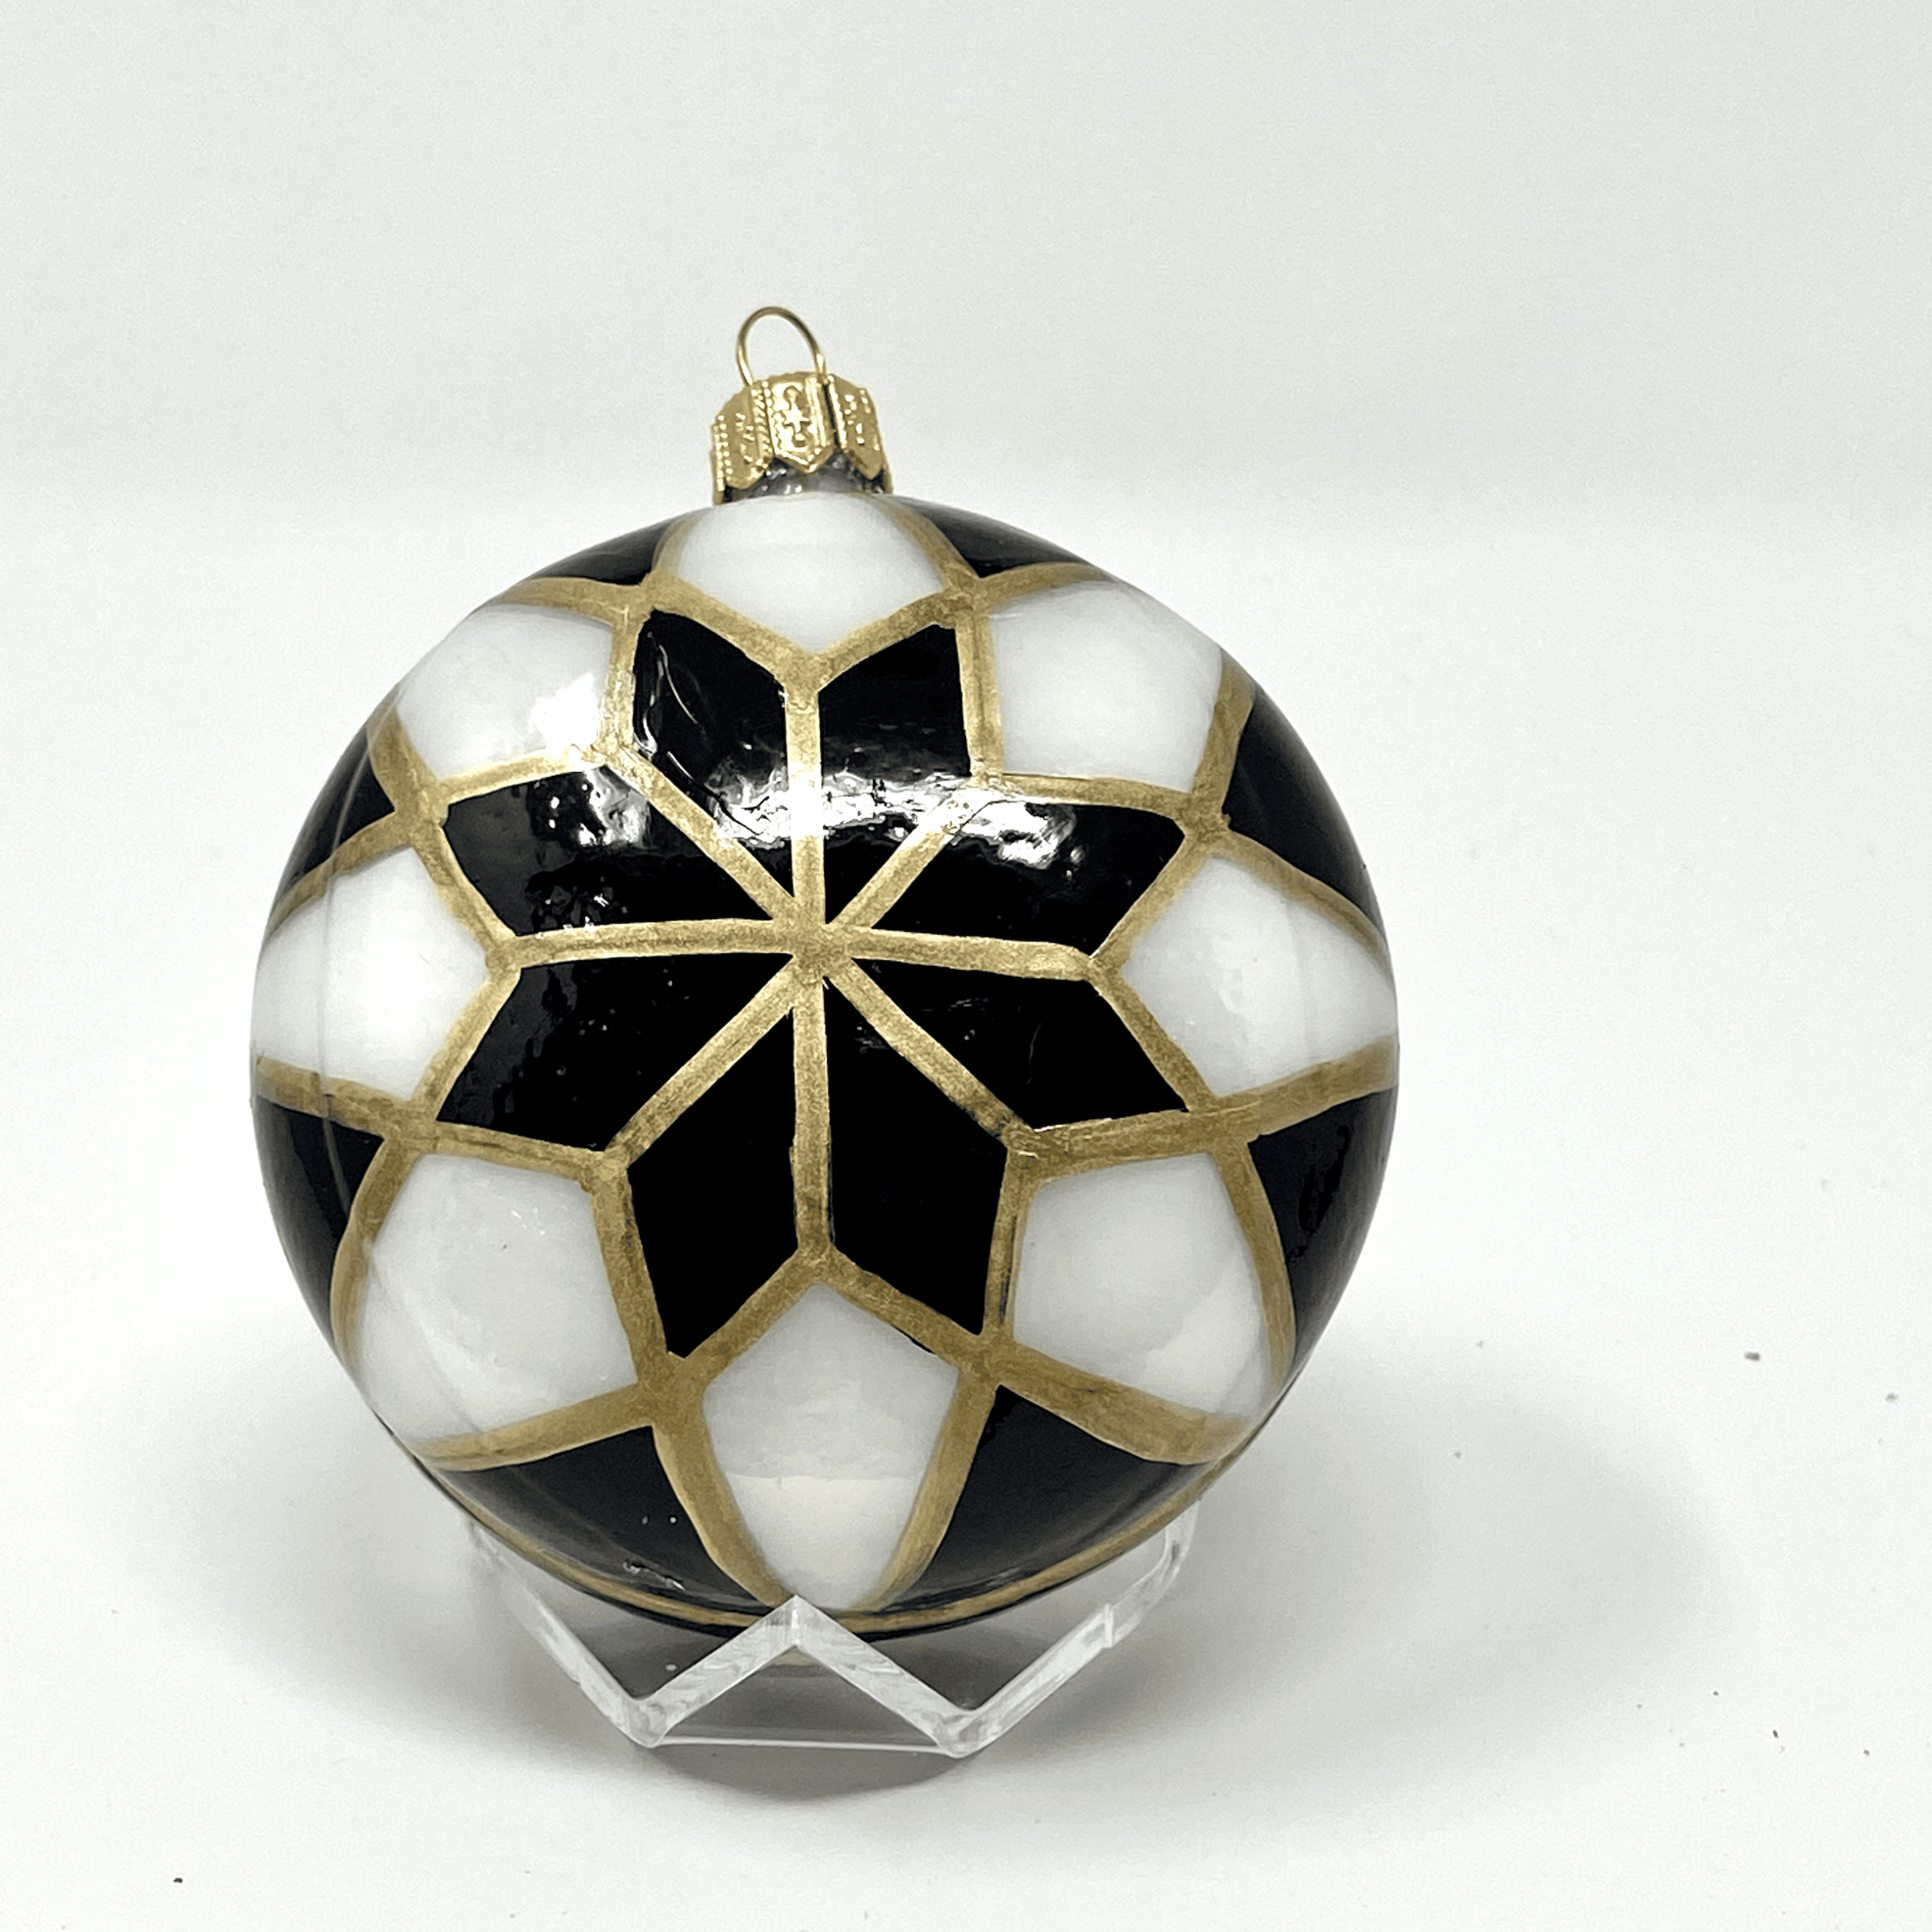 Duncan's retro yo-yo glass ornament